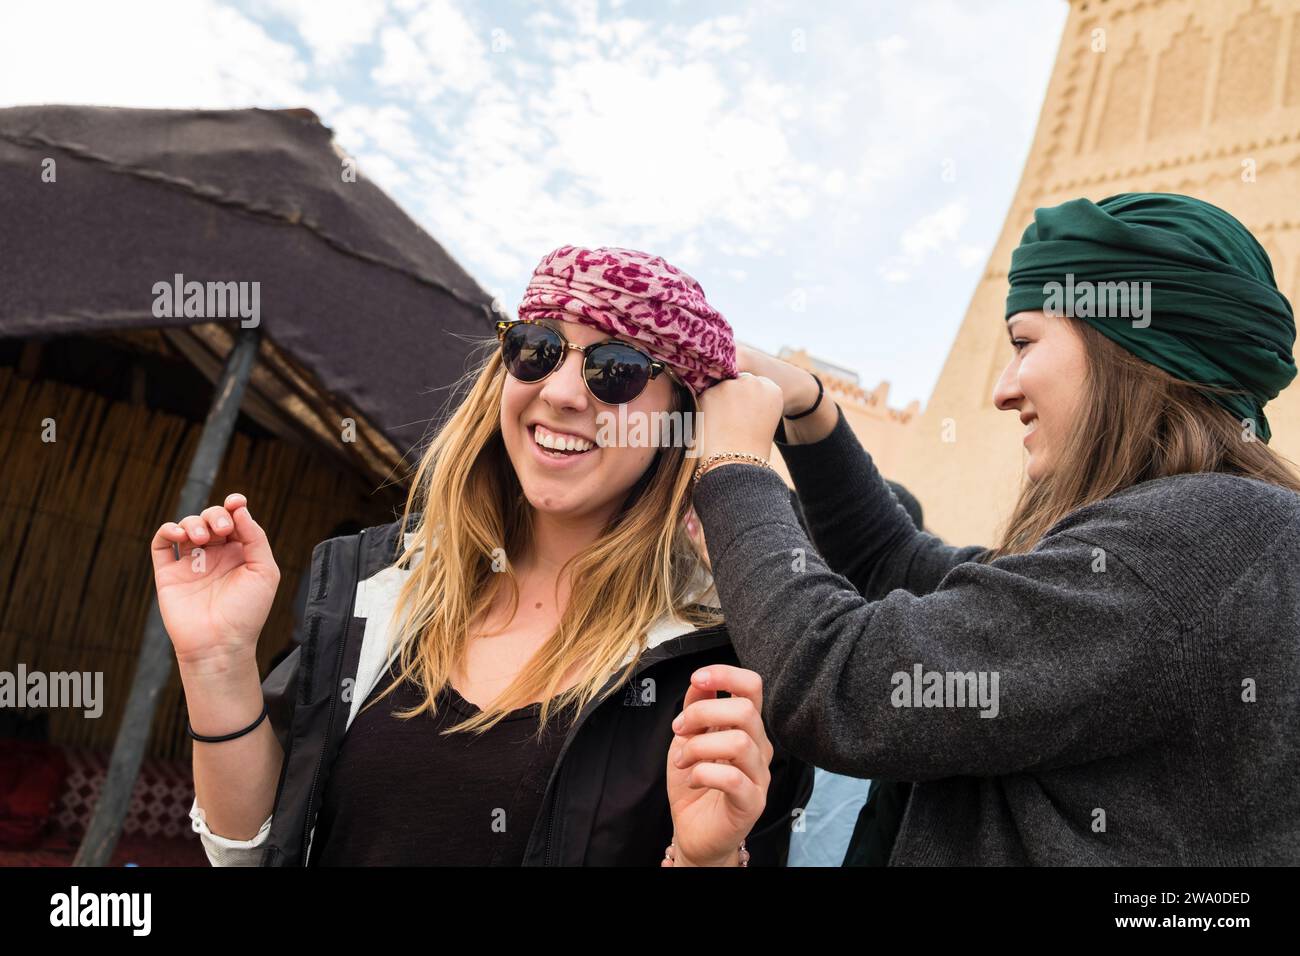 Une touriste aide une autre femme à attacher une écharpe dure du désert sur sa tête pour la protéger dans le désert du Sahara, au Maroc Banque D'Images